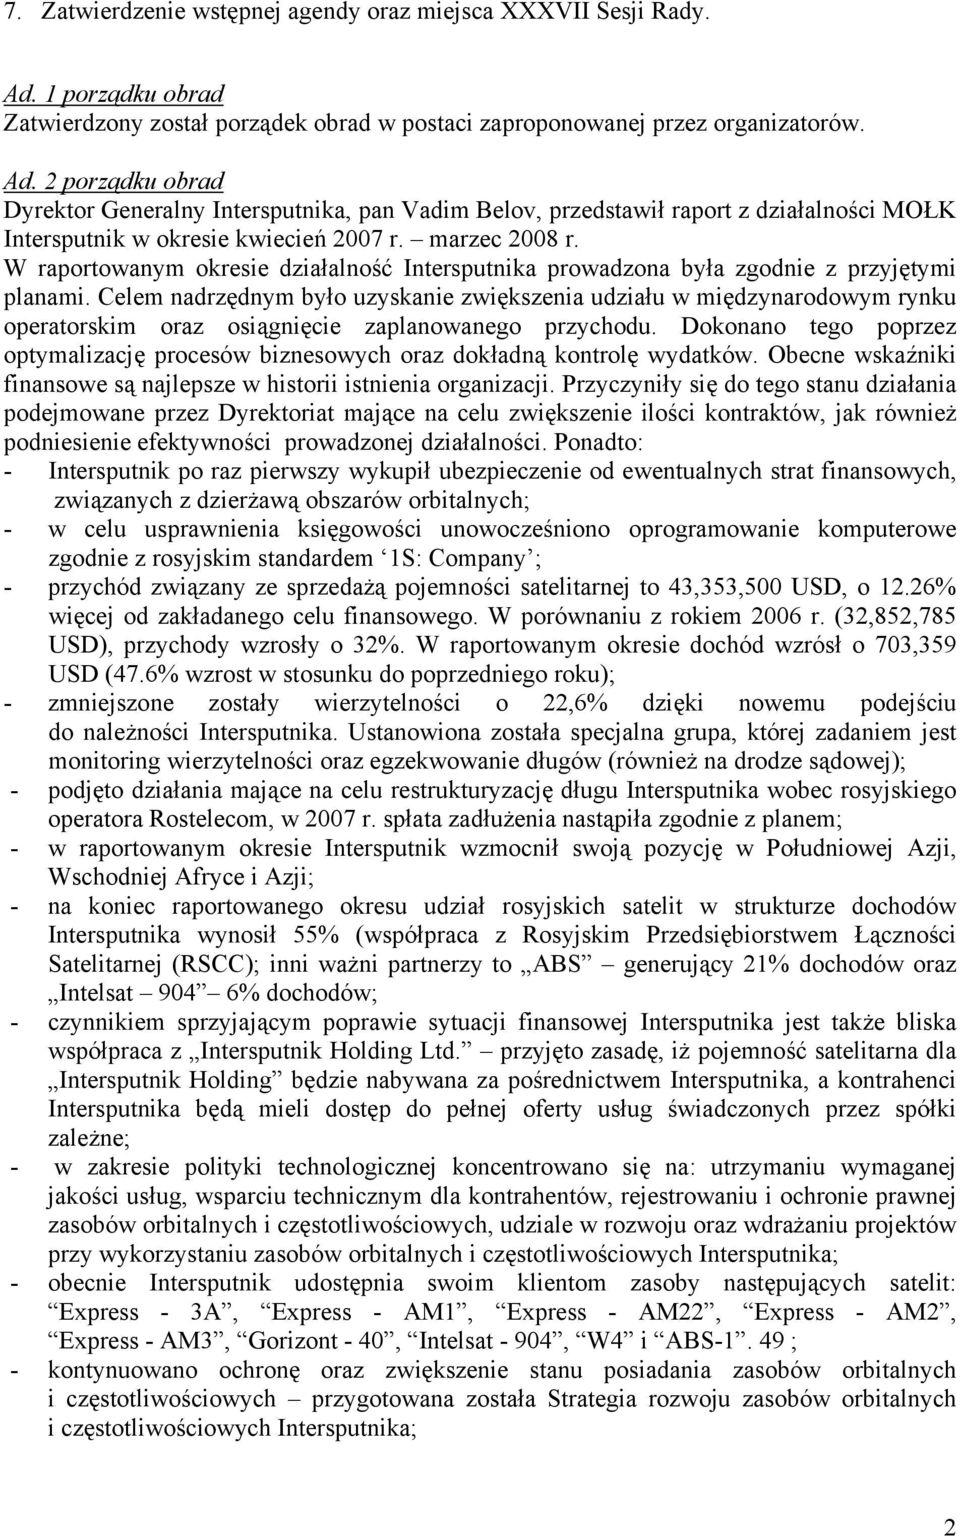 2 porządku obrad Dyrektor Generalny Intersputnika, pan Vadim Belov, przedstawił raport z działalności MOŁK Intersputnik w okresie kwiecień 2007 r. marzec 2008 r.